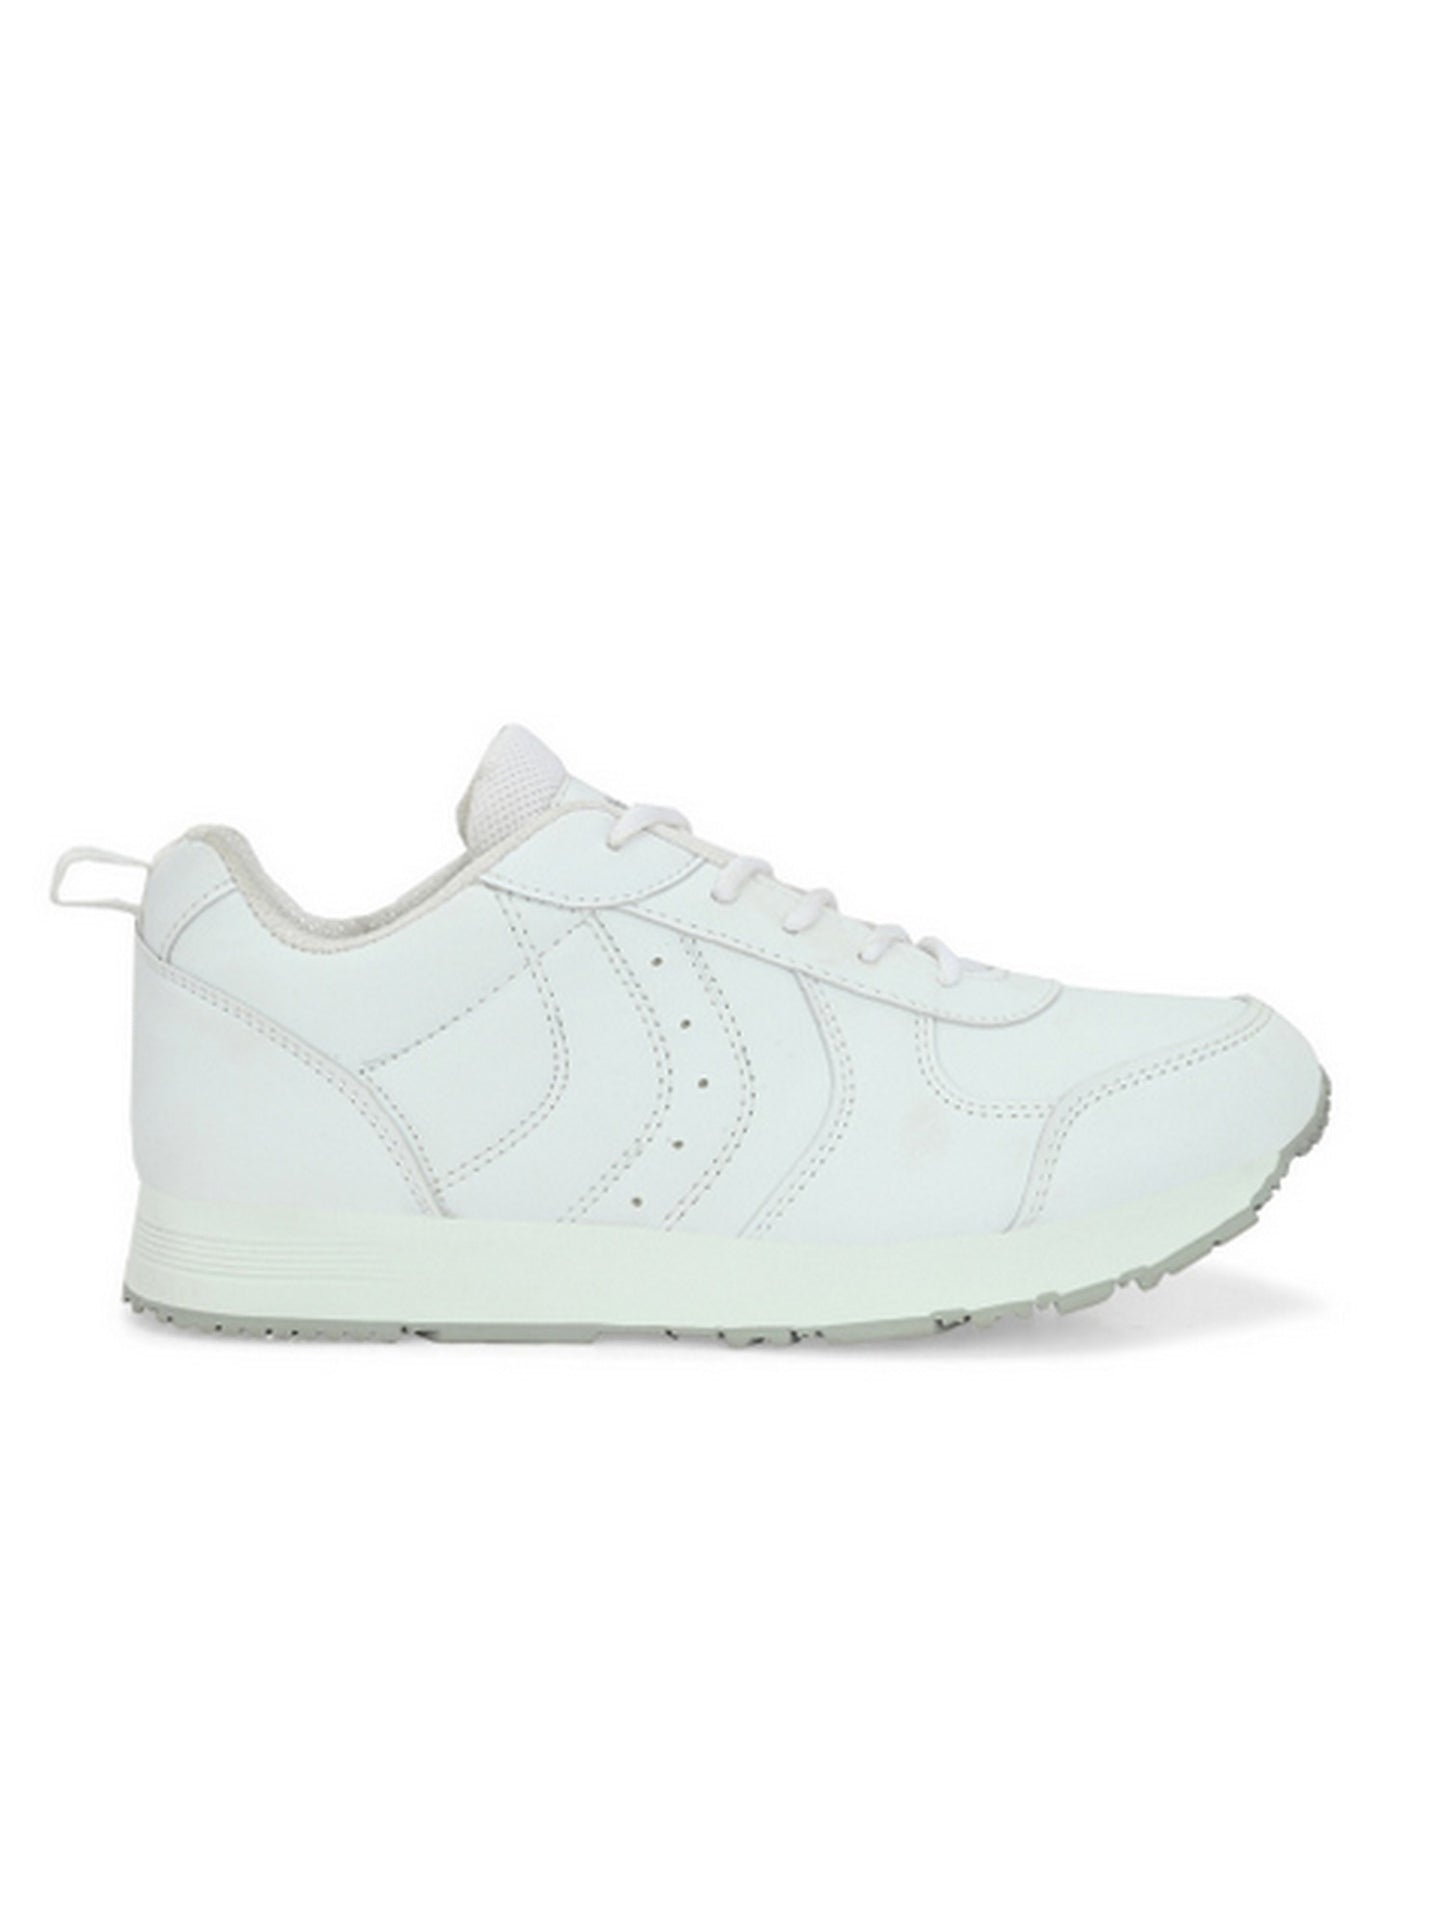 Hirolas® Men's  Multisport Sneaker Shoes- White HRL1802WHT